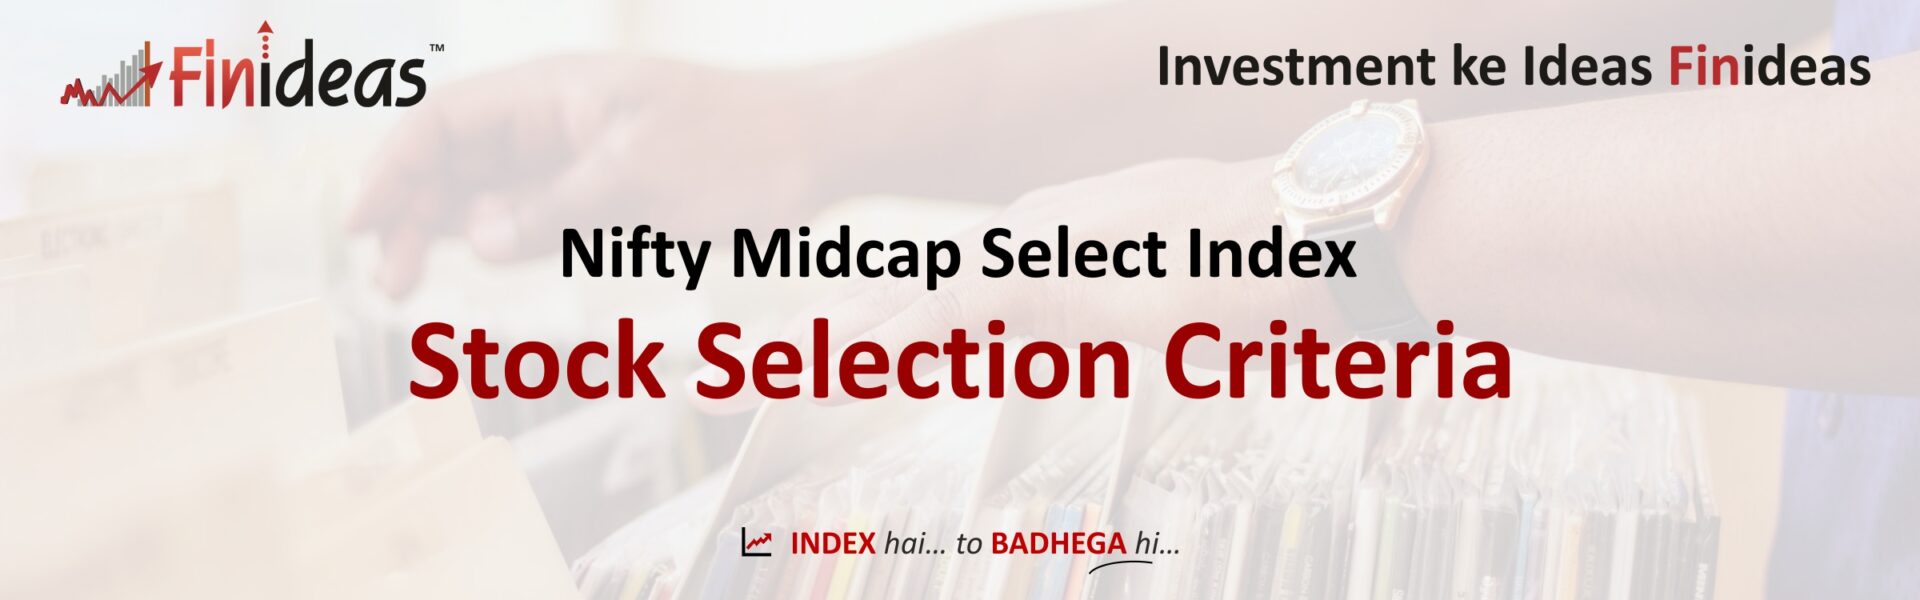 Finideas Stock Selection Criteria